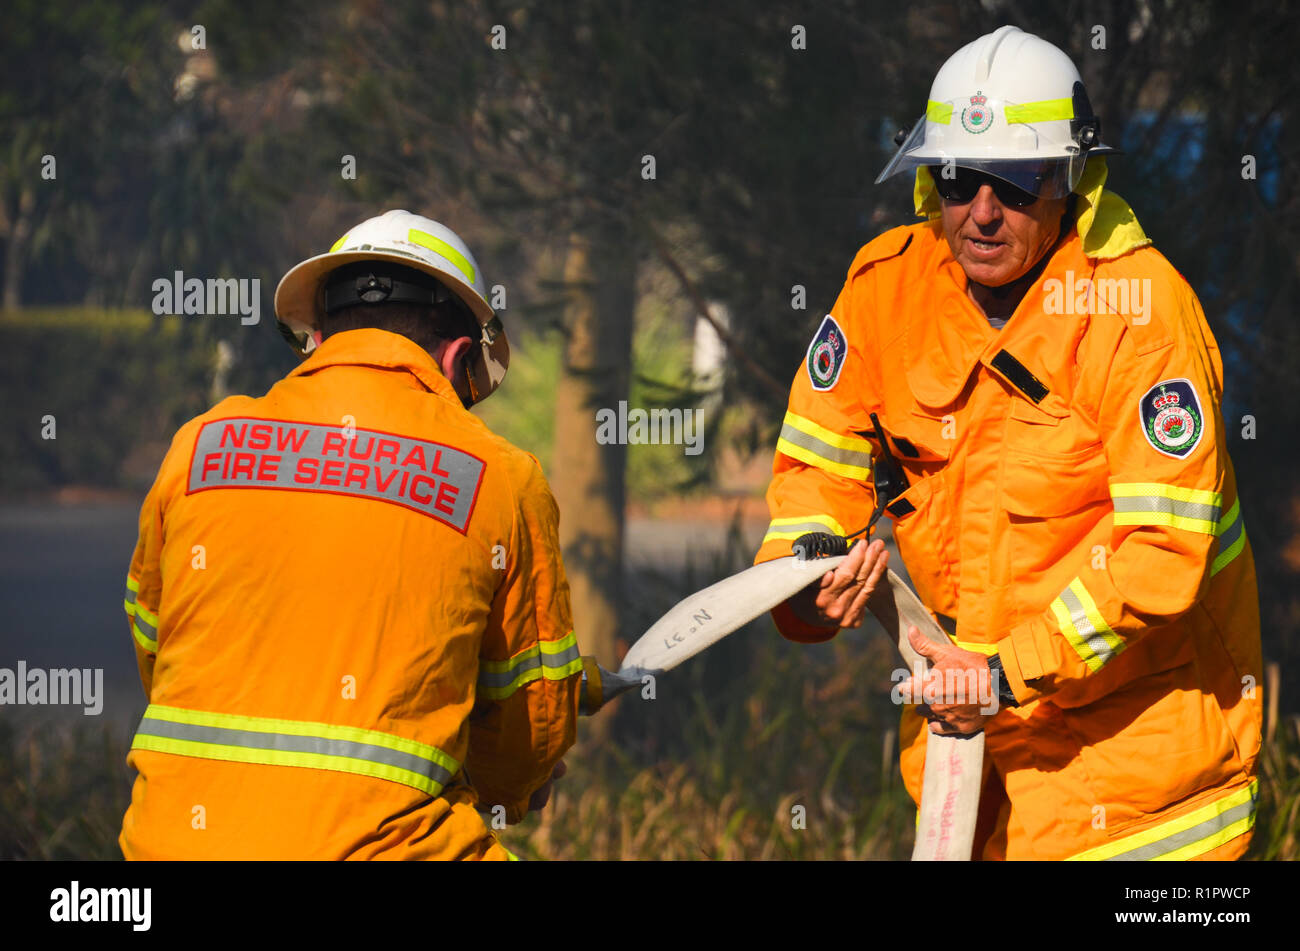 Freiwillige Feuerwehr von St Georges Basin Arbeit den Schlauch an einem Fahrzeug Feuer an Jervis Bay, NSW, Australien - 12 Dez 2017 zu verbinden. Stockfoto